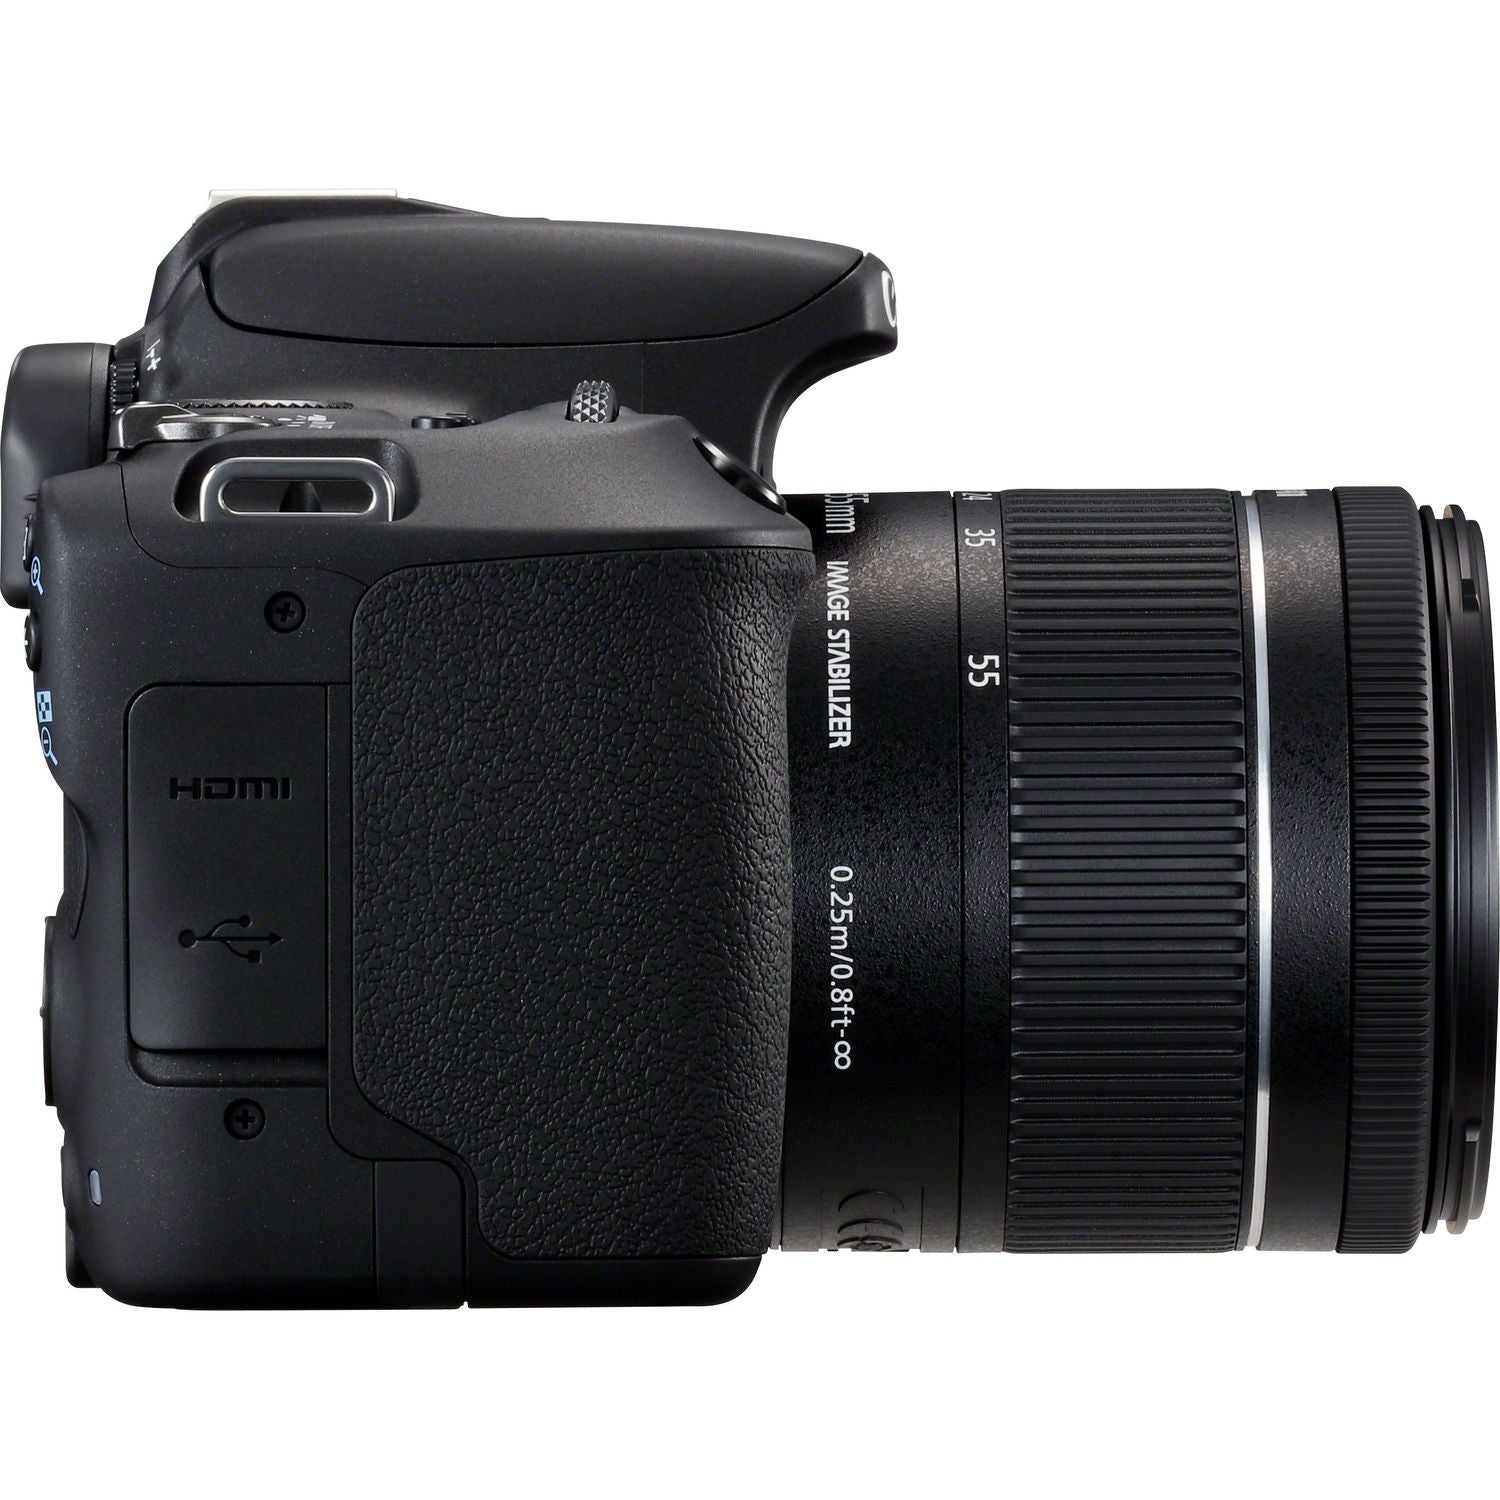 Canon EOS 200D Digital SLR Camera + 18-55mm IS STM Lens Kit